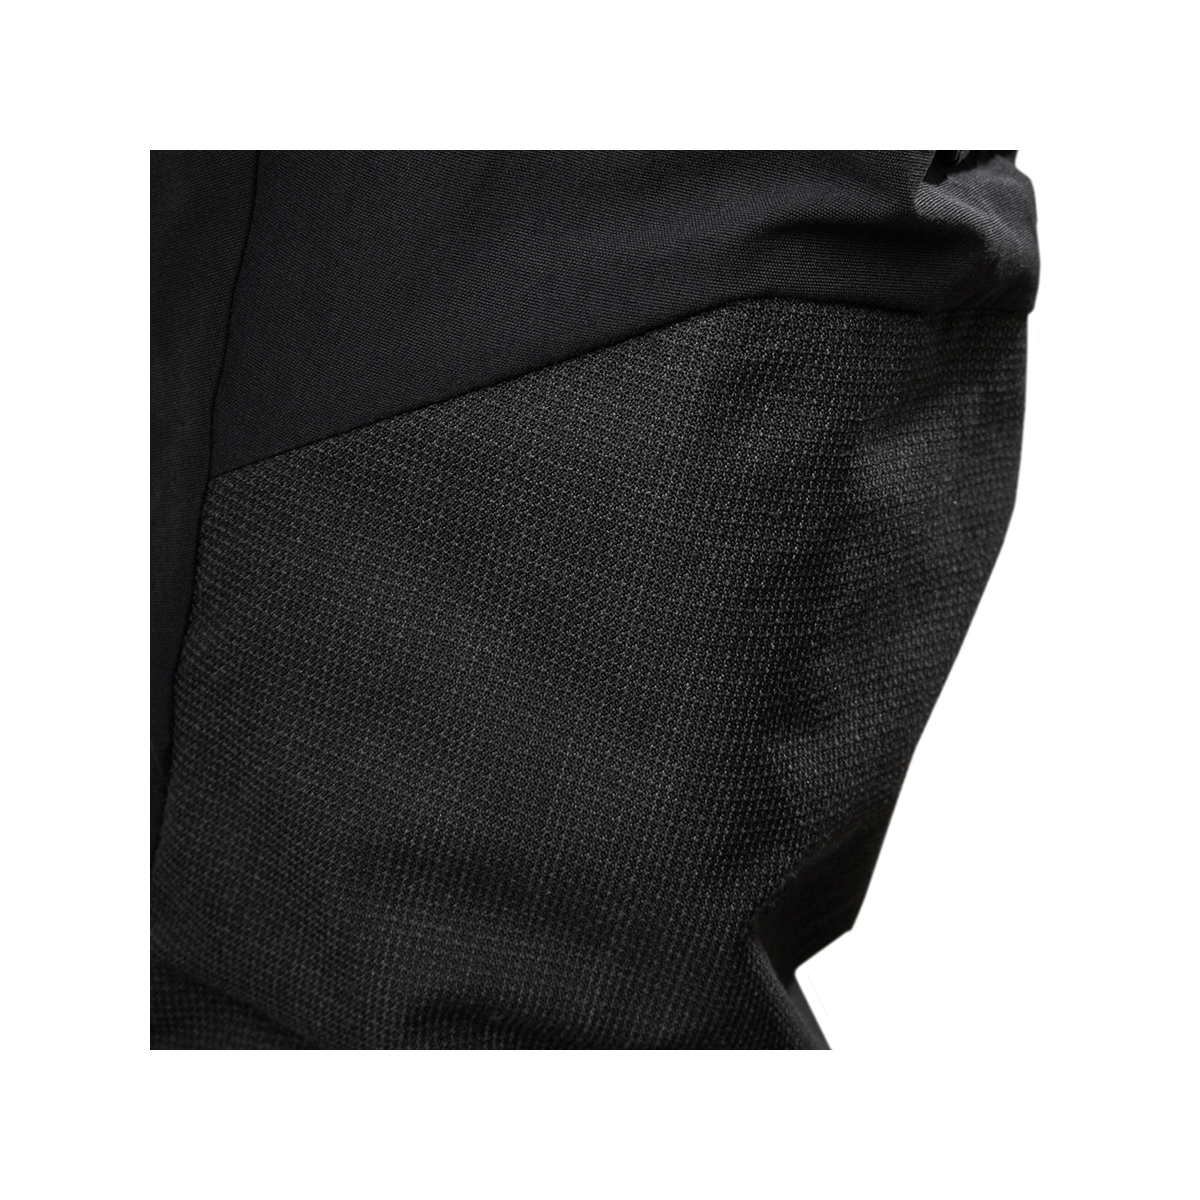 Musto Evolution Performance pantalon de voile 2.0 homme noir, taille 38